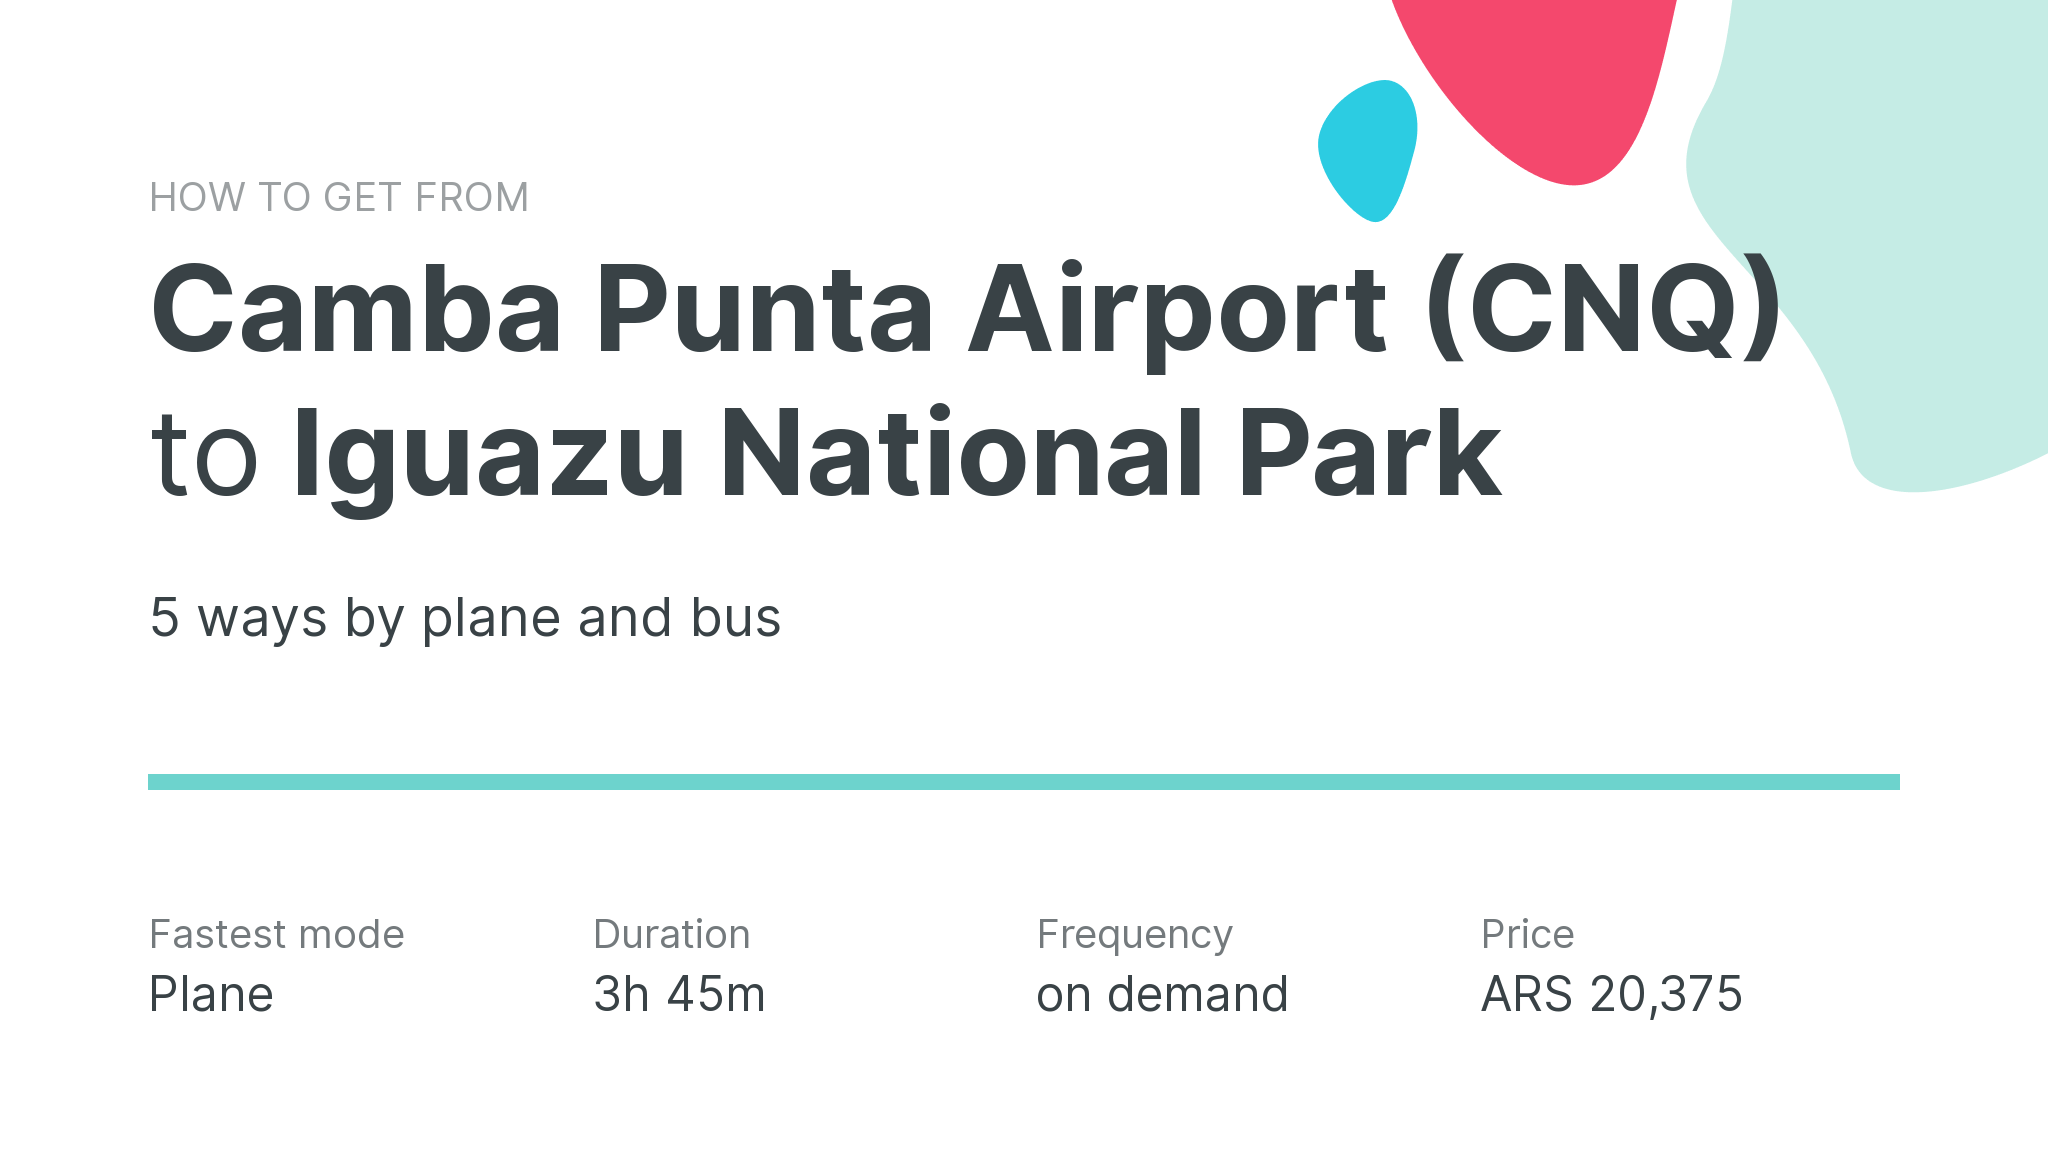 How do I get from Camba Punta Airport (CNQ) to Iguazu National Park